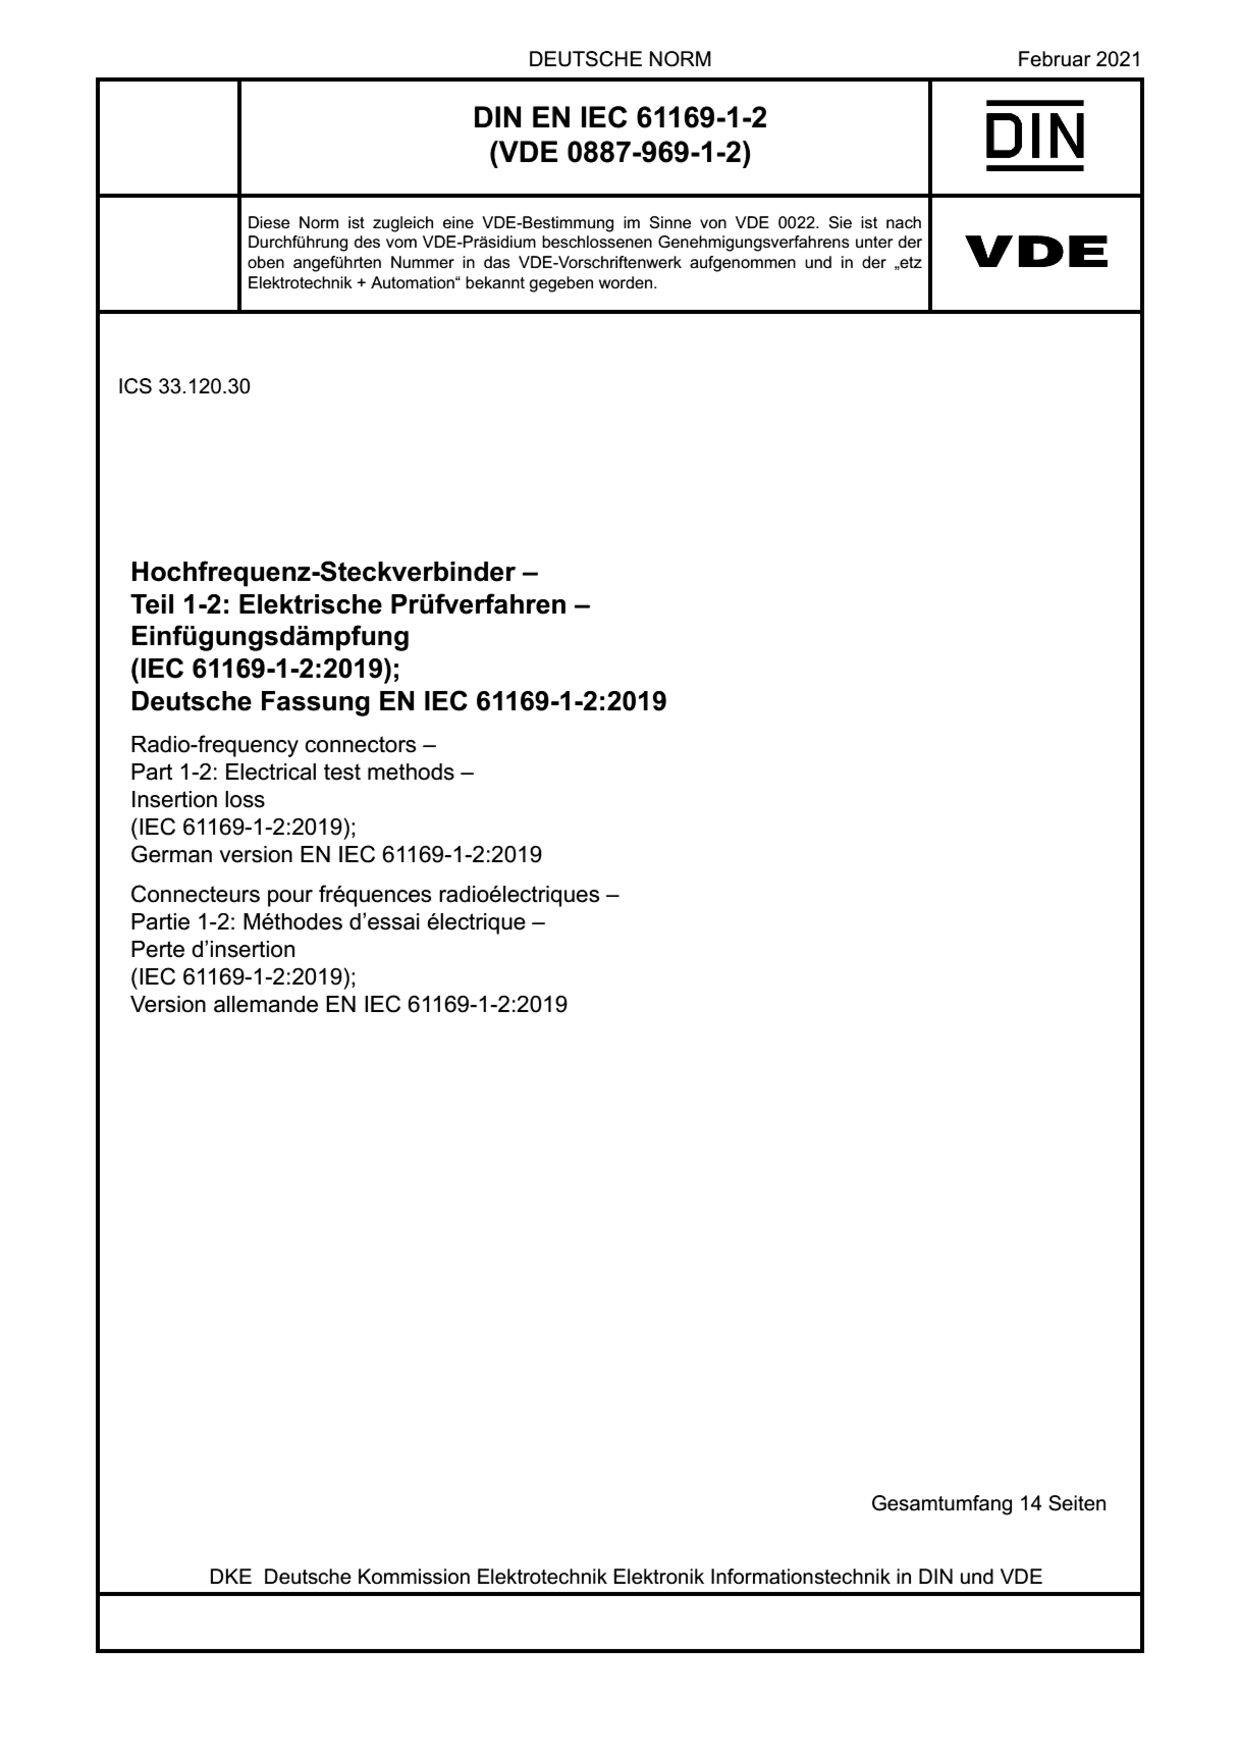 DIN EN IEC 61169-1-2:2021